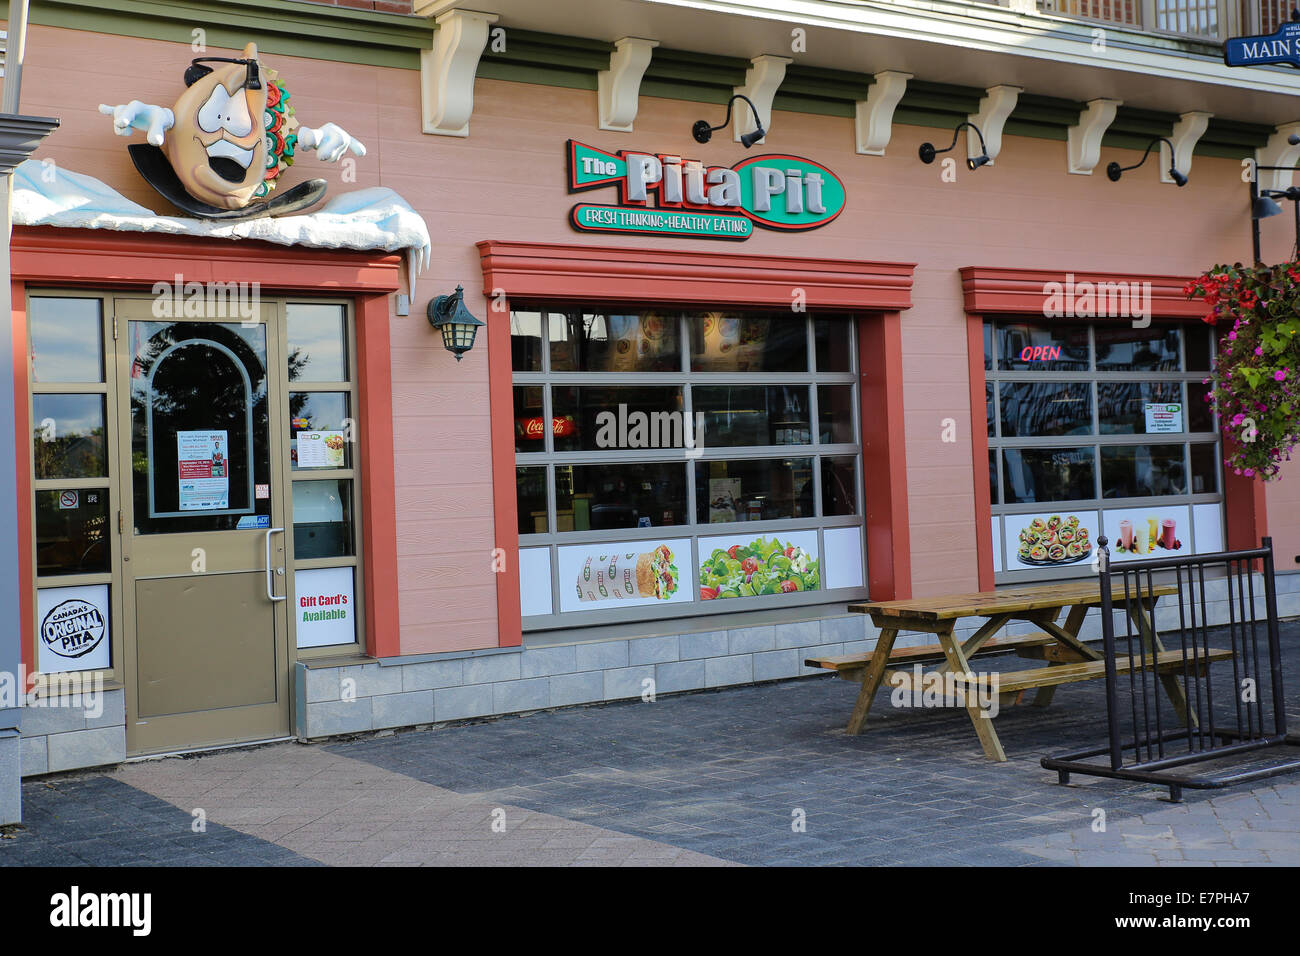 Est un moyen rapide de Pita Pit-service franchise restaurant servant des sandwichs pita. Elle a son siège à Kingston, Ontario, Canada. Banque D'Images